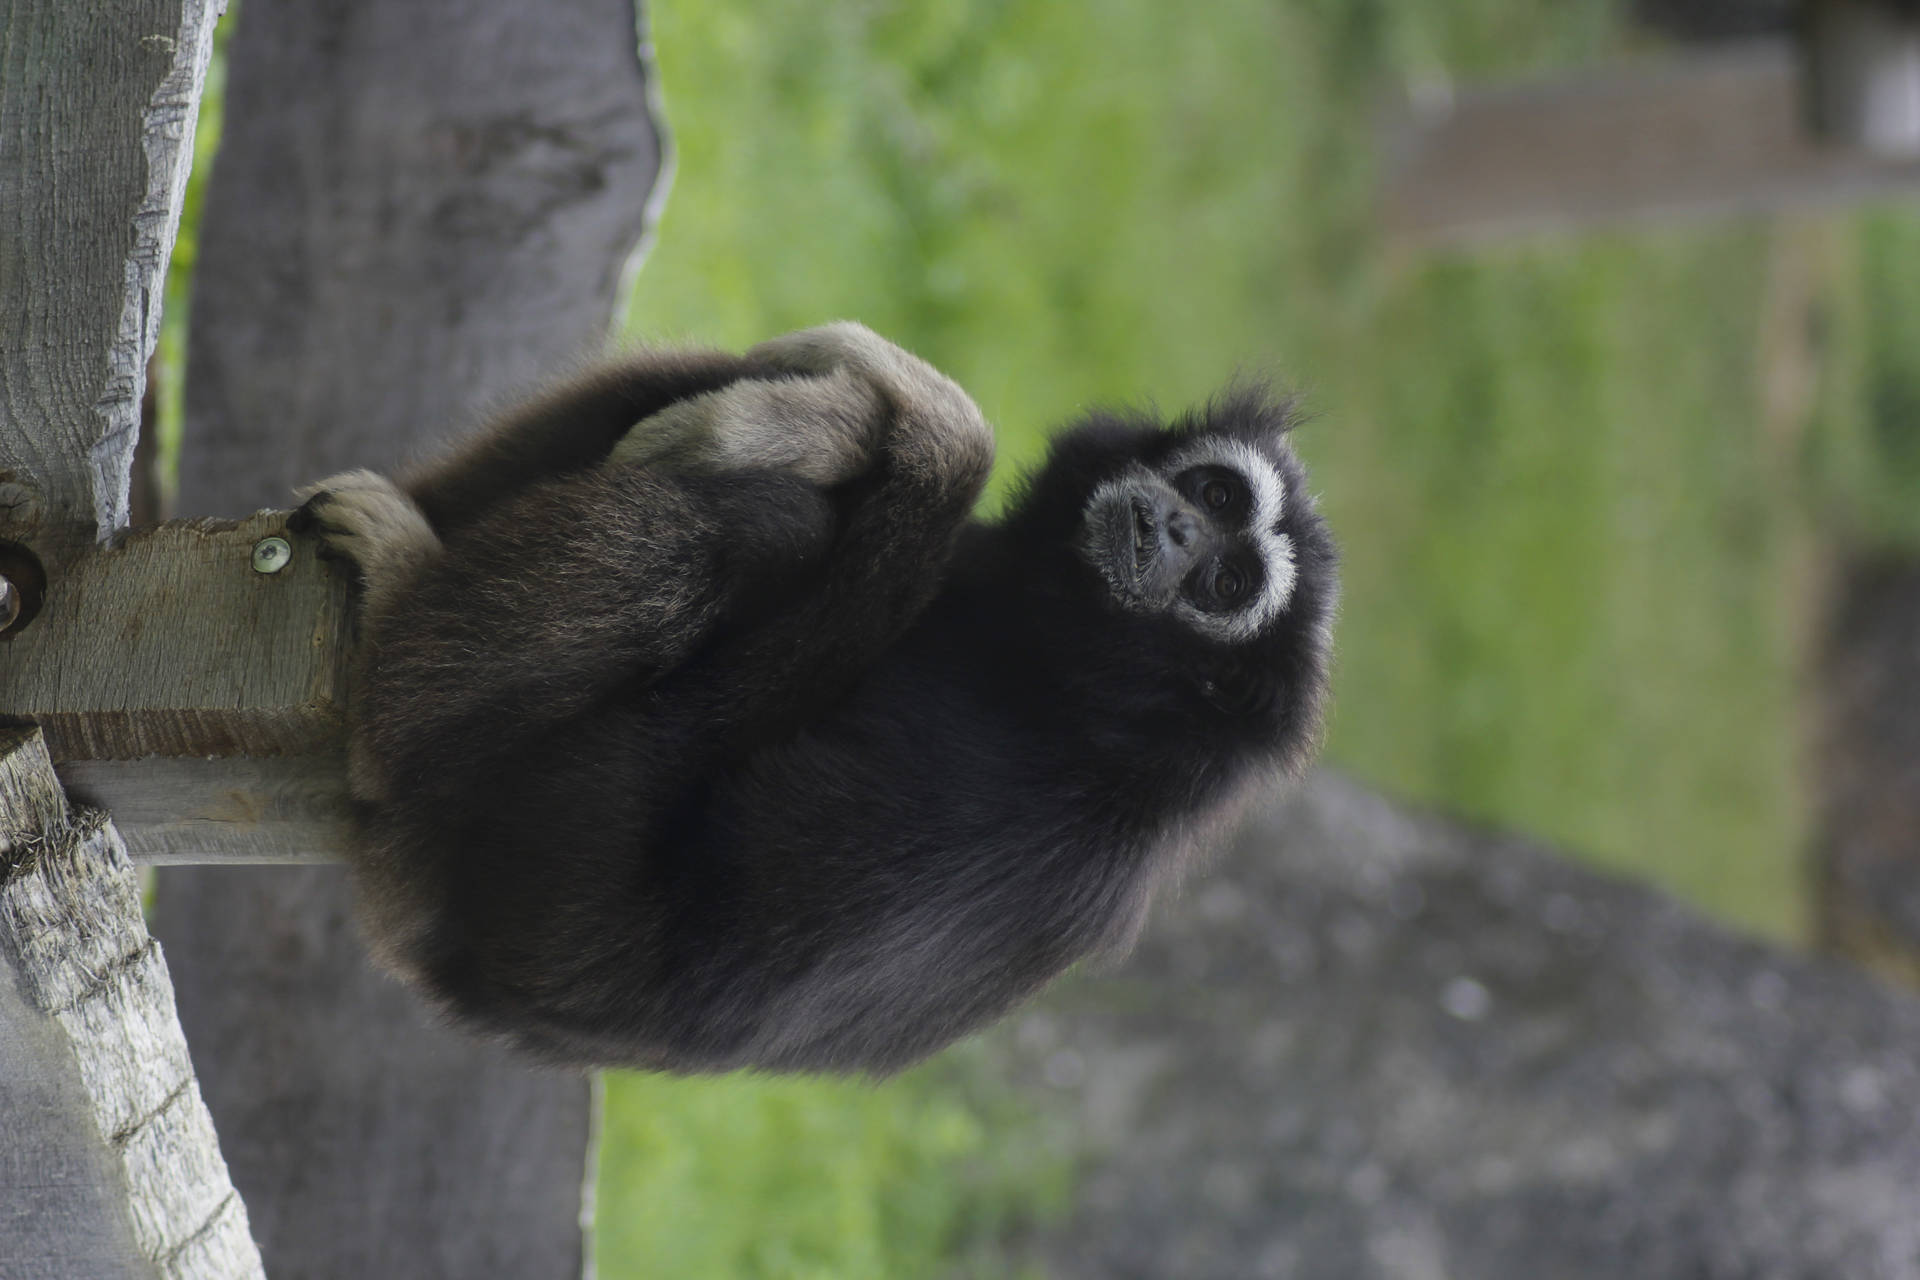 100 Free Gibbon  Monkey Images  Pixabay